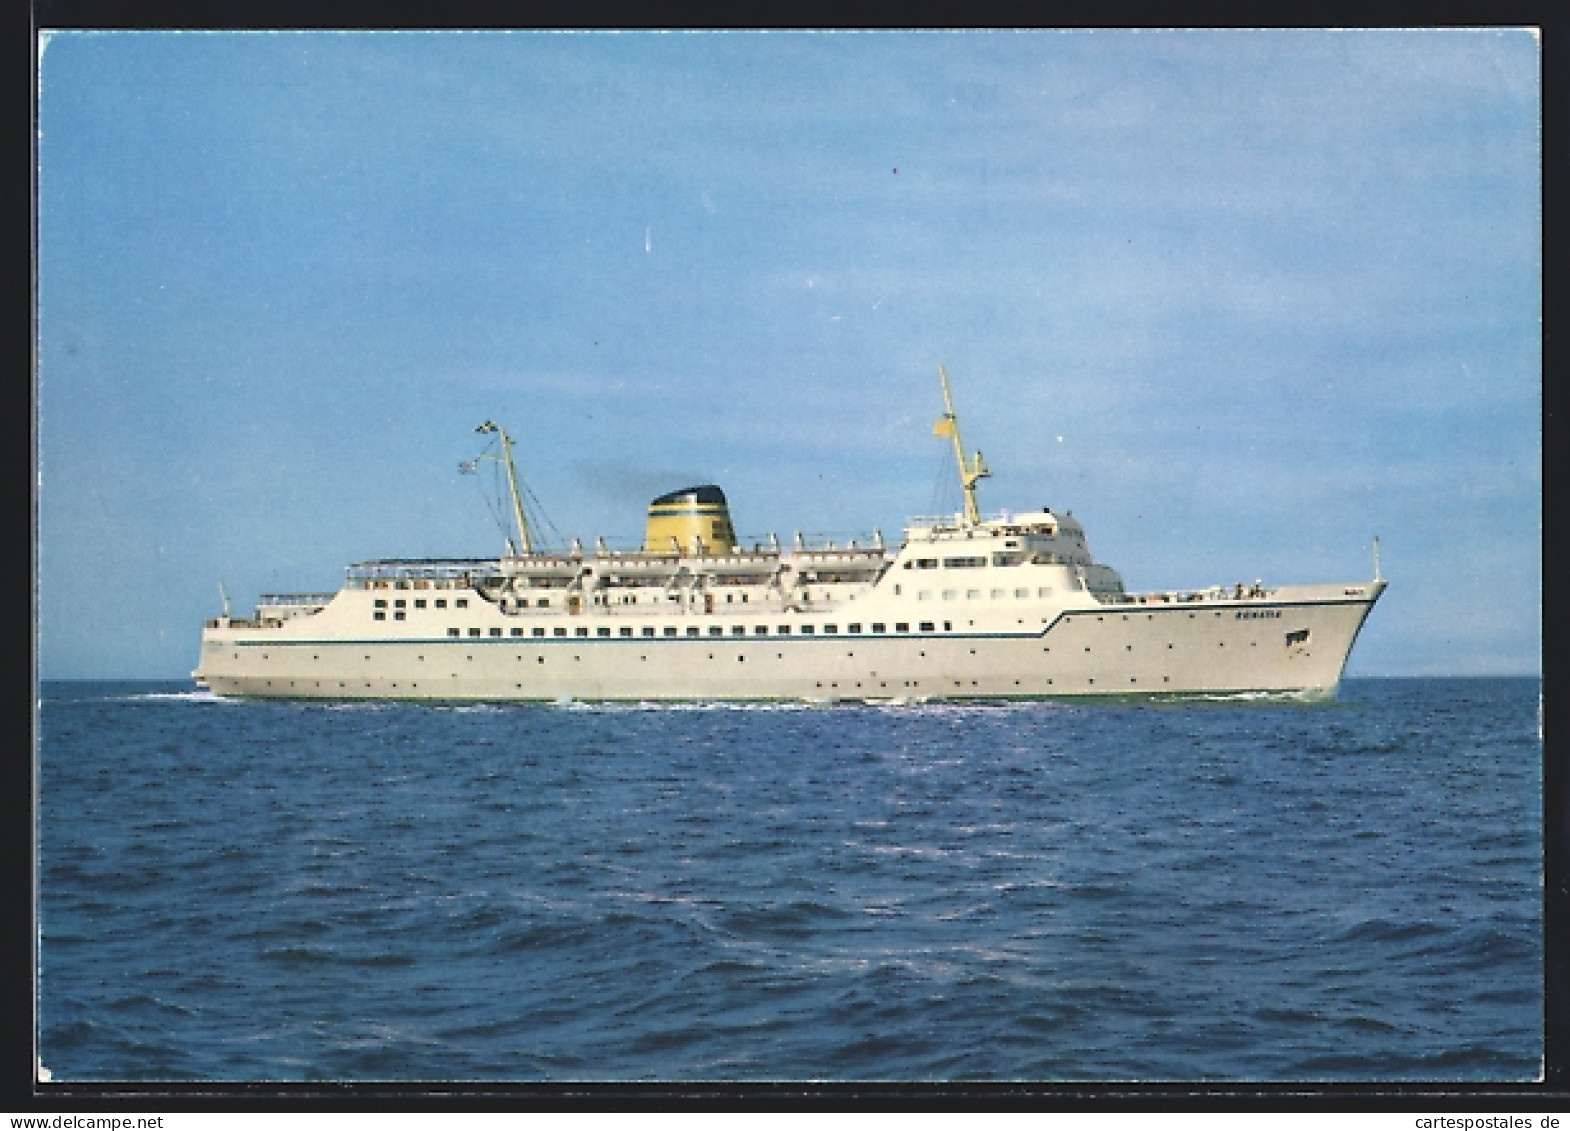 AK Hellenic Mediterranean Lines Passagierschiff Egnatia  - Paquebots